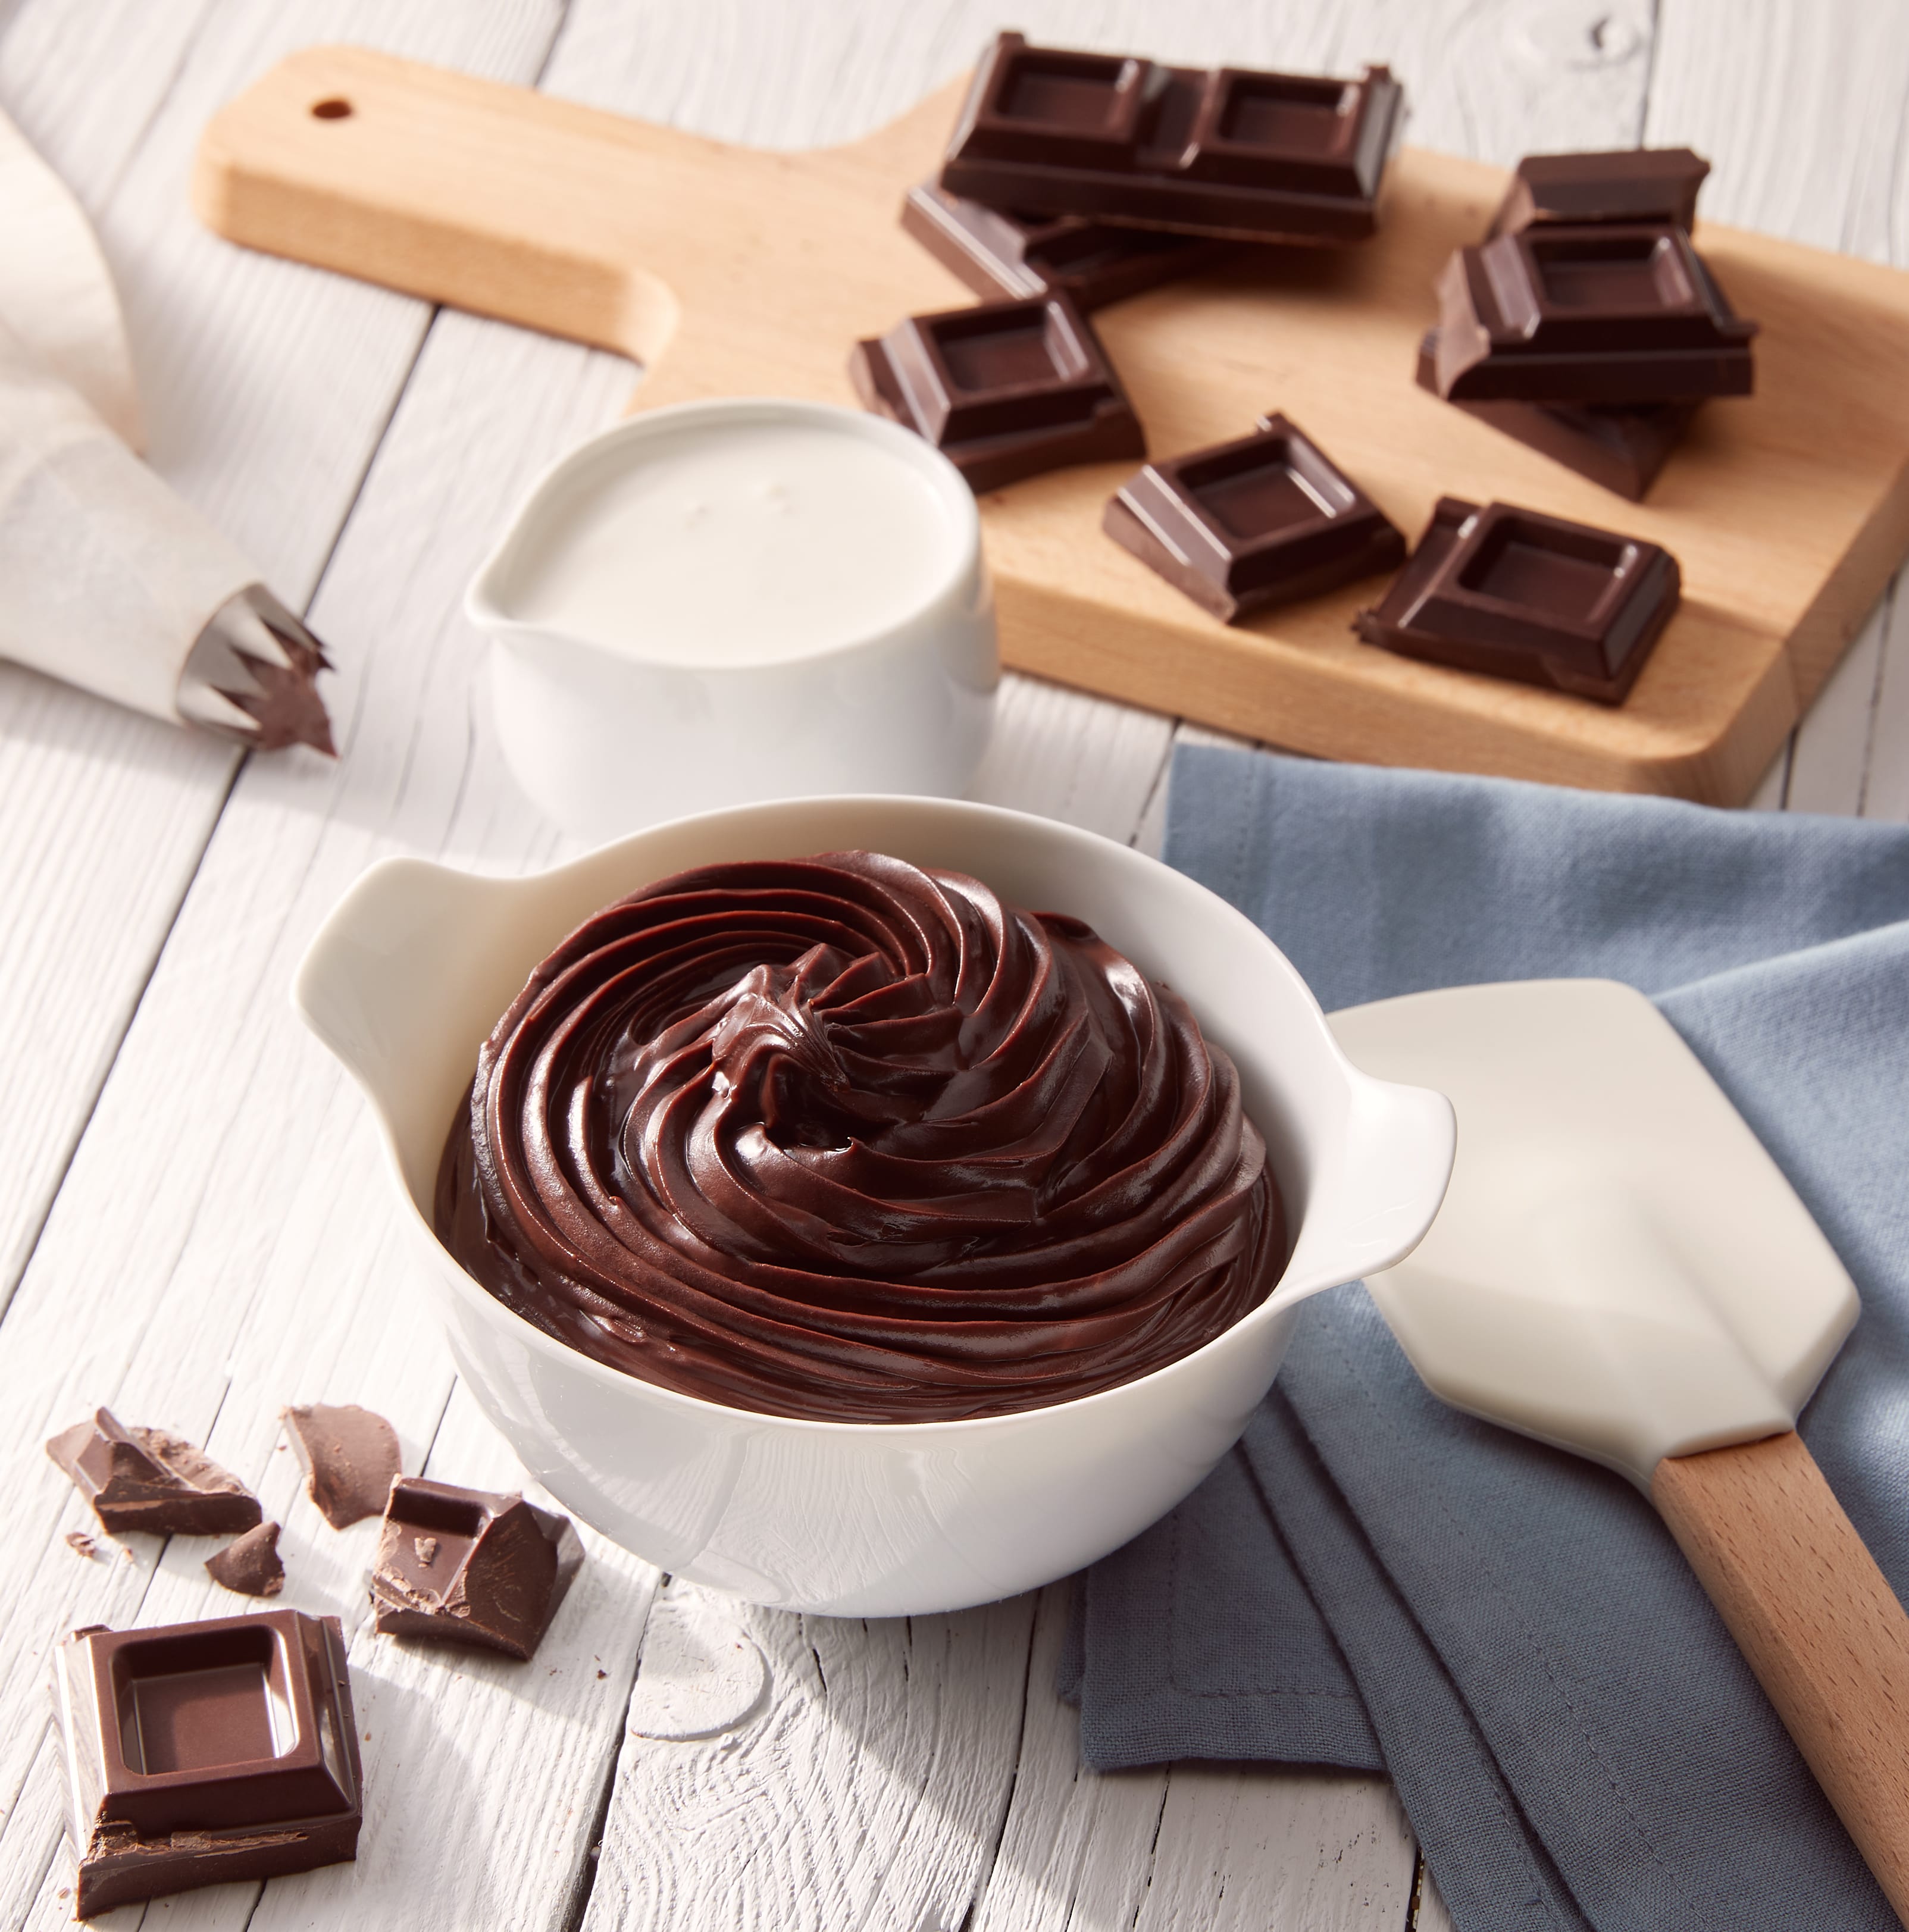 Crema al cioccolato fondente Perugina fatta in casa